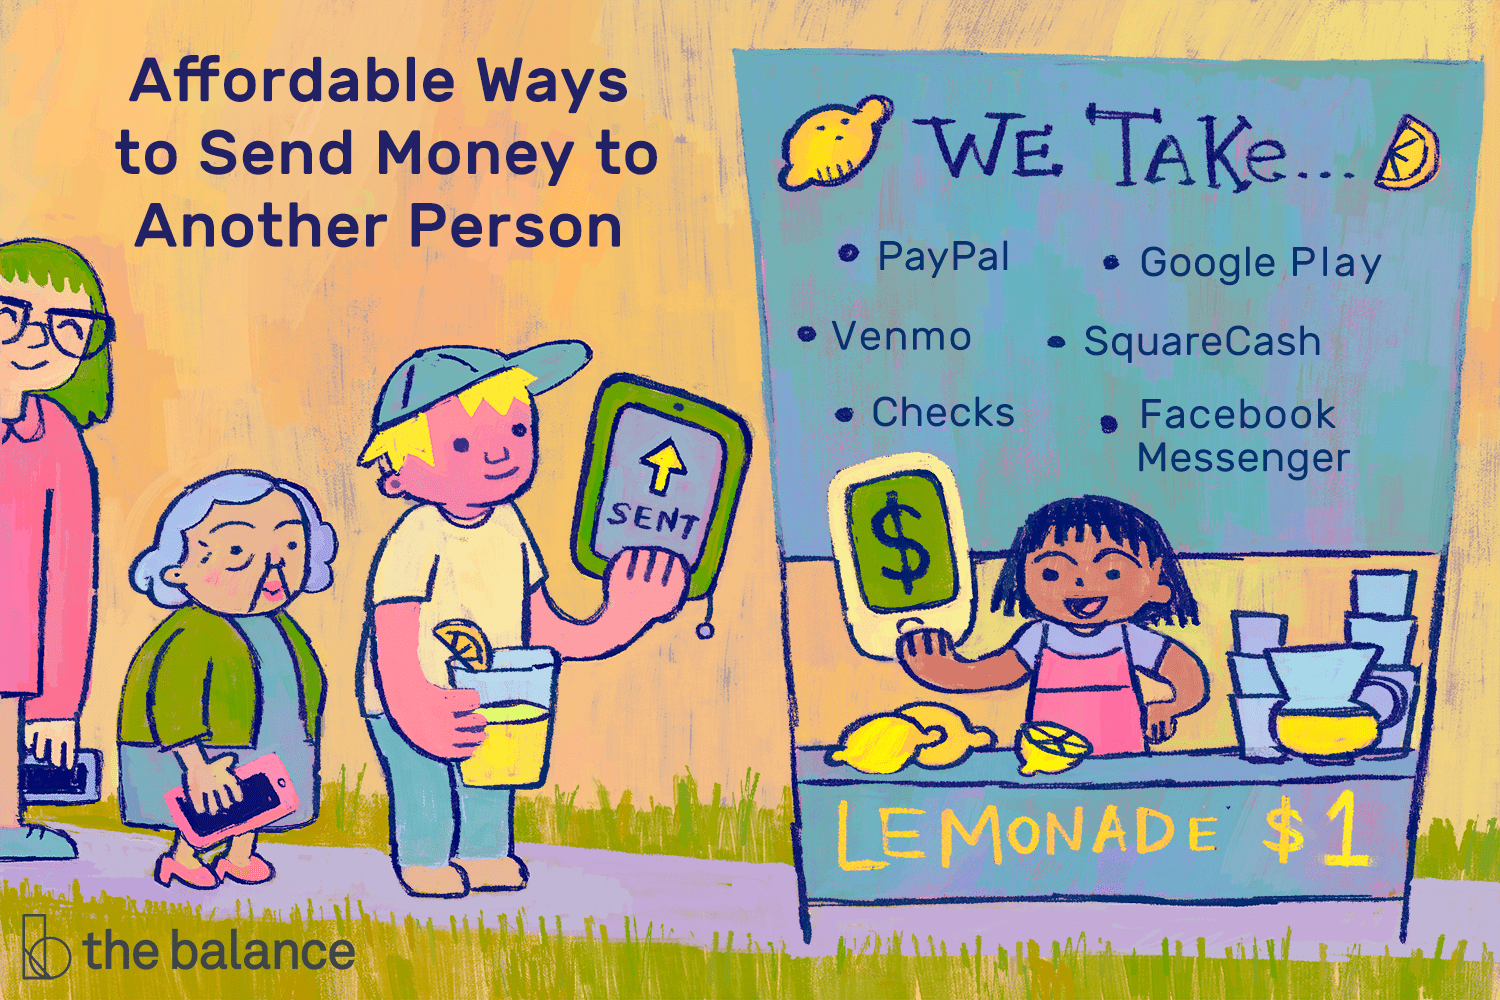 一张孩子们在柠檬水摊上的插图，代表了向另一个人汇款的实惠方式，包括“PayPal”、“Venmo”、“支票”、“谷歌Play”、“SquareCash”和“Facebook Messenger”。＂class=